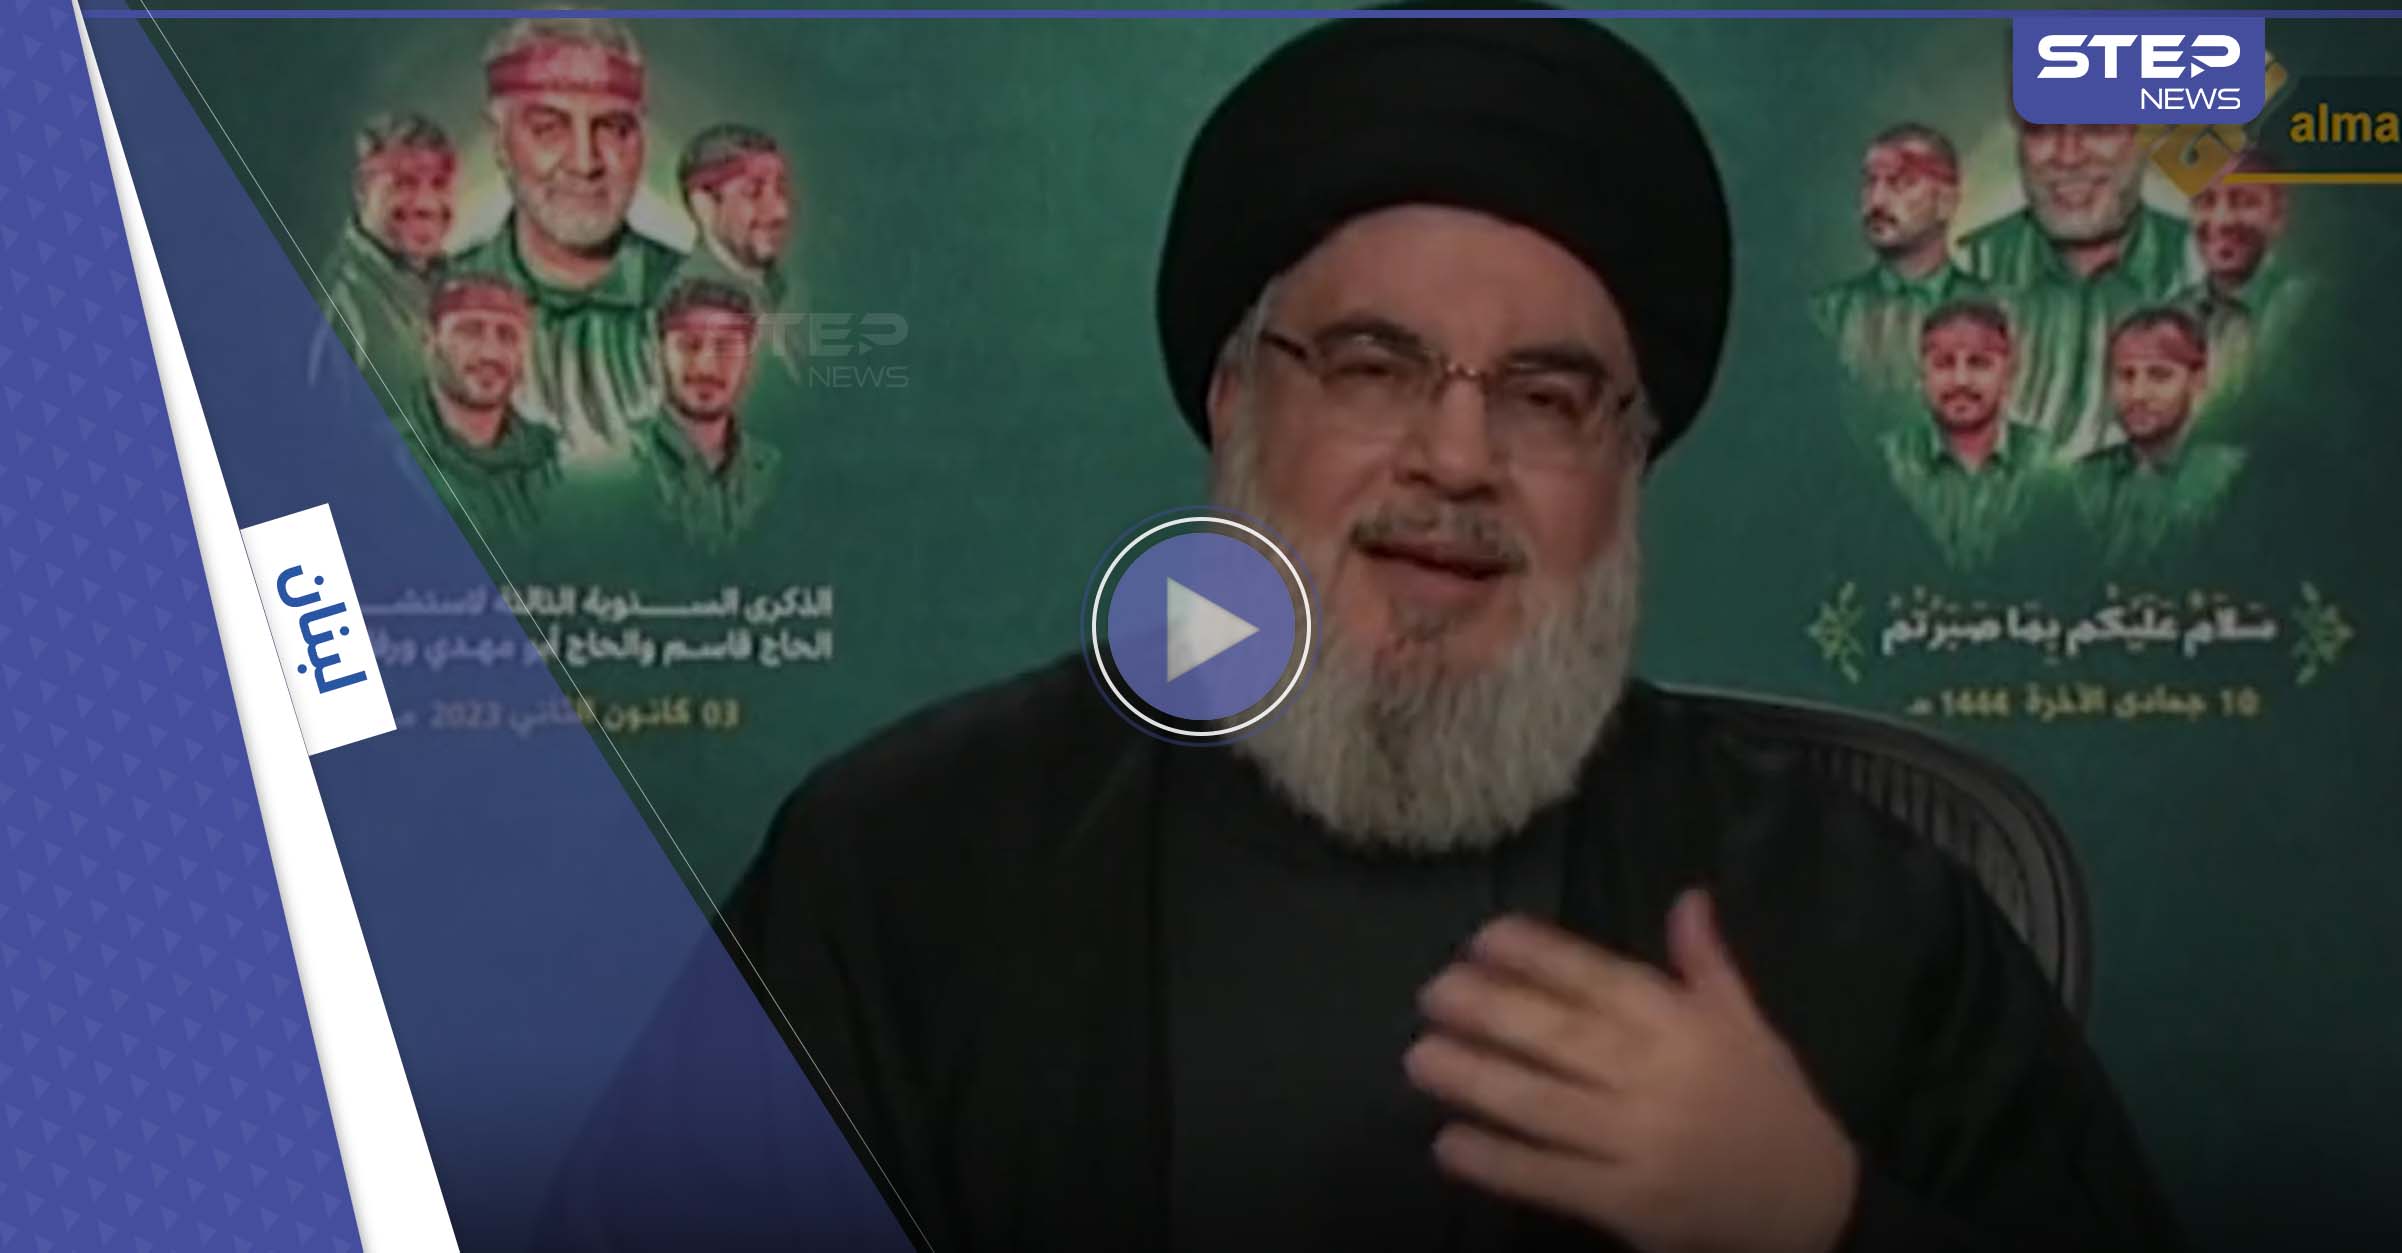 بعد أنباء عن تدهور صحته.. ماذا قال زعيم ميليشيا حزب الله اللبناني بأوّل ظهورٍ له؟ (فيديو)